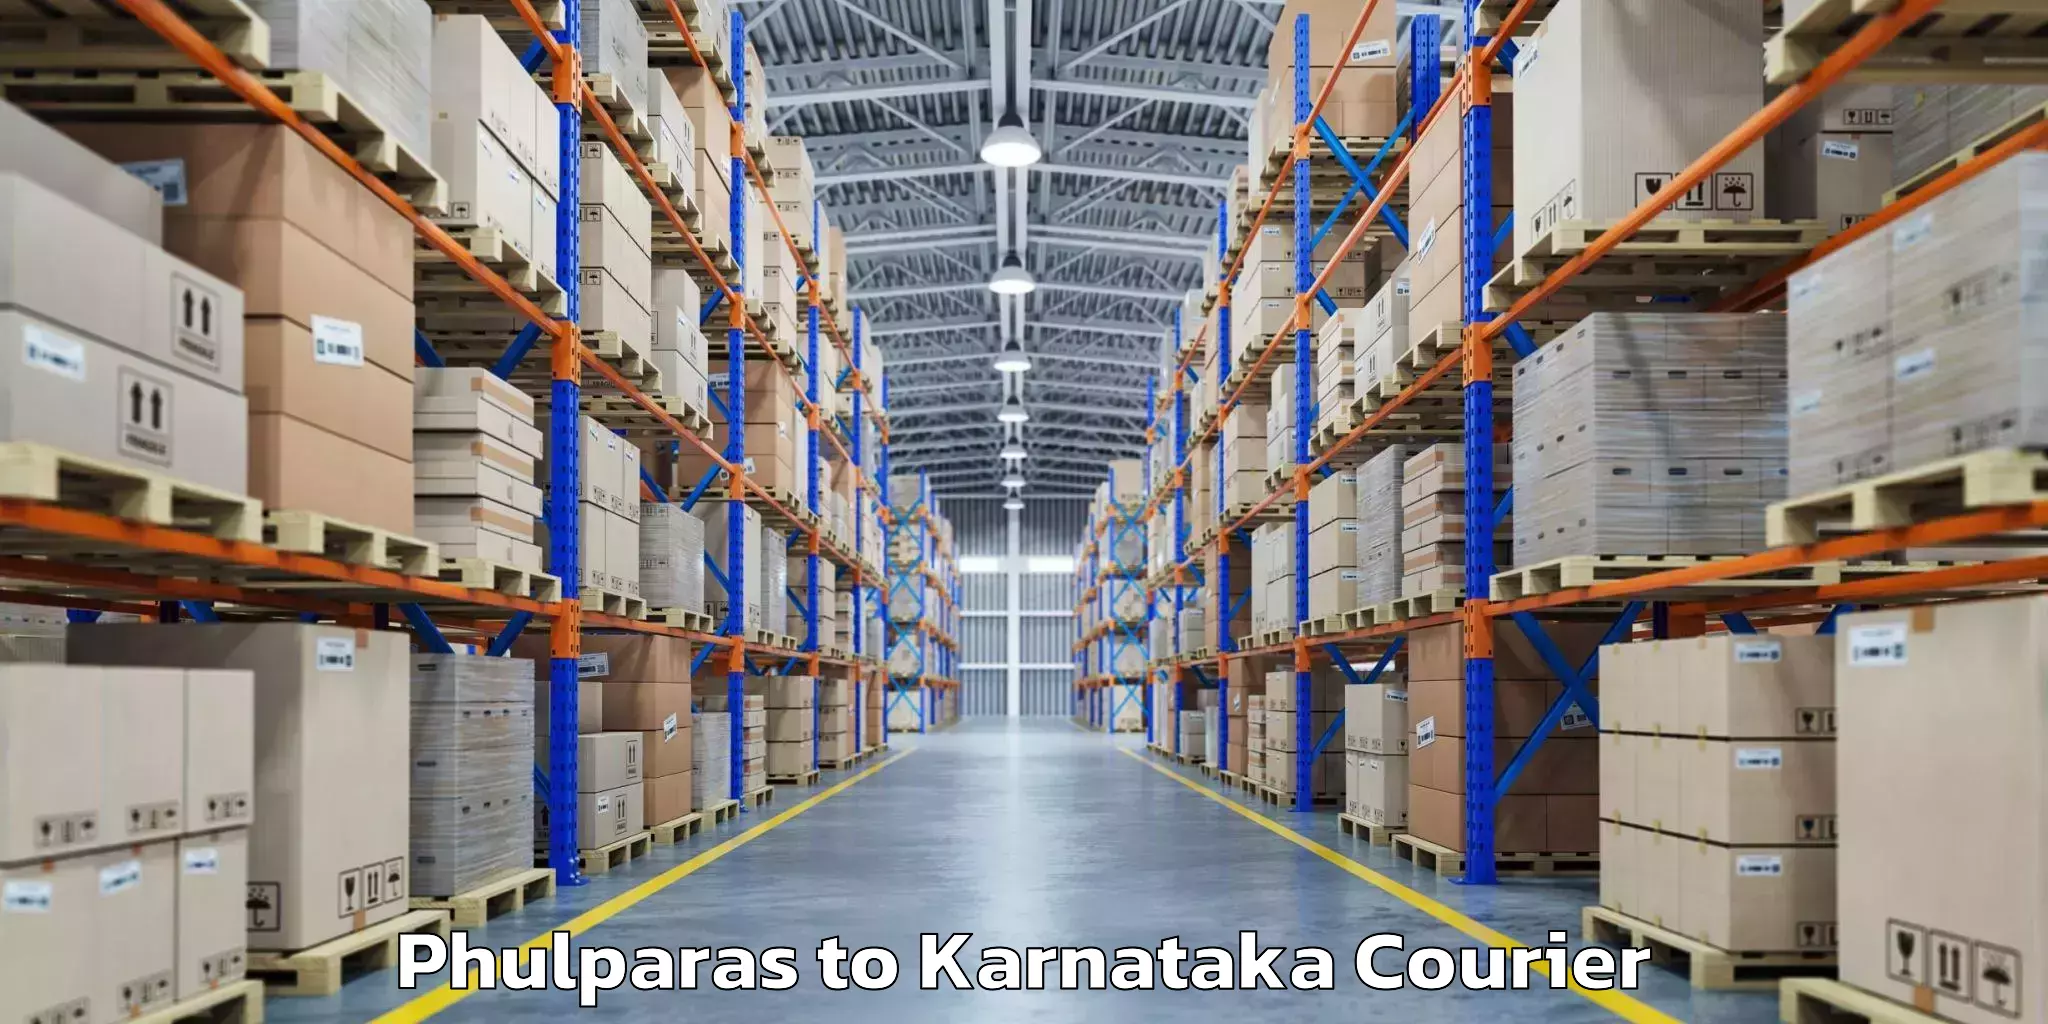 Regional luggage transport Phulparas to Karnataka